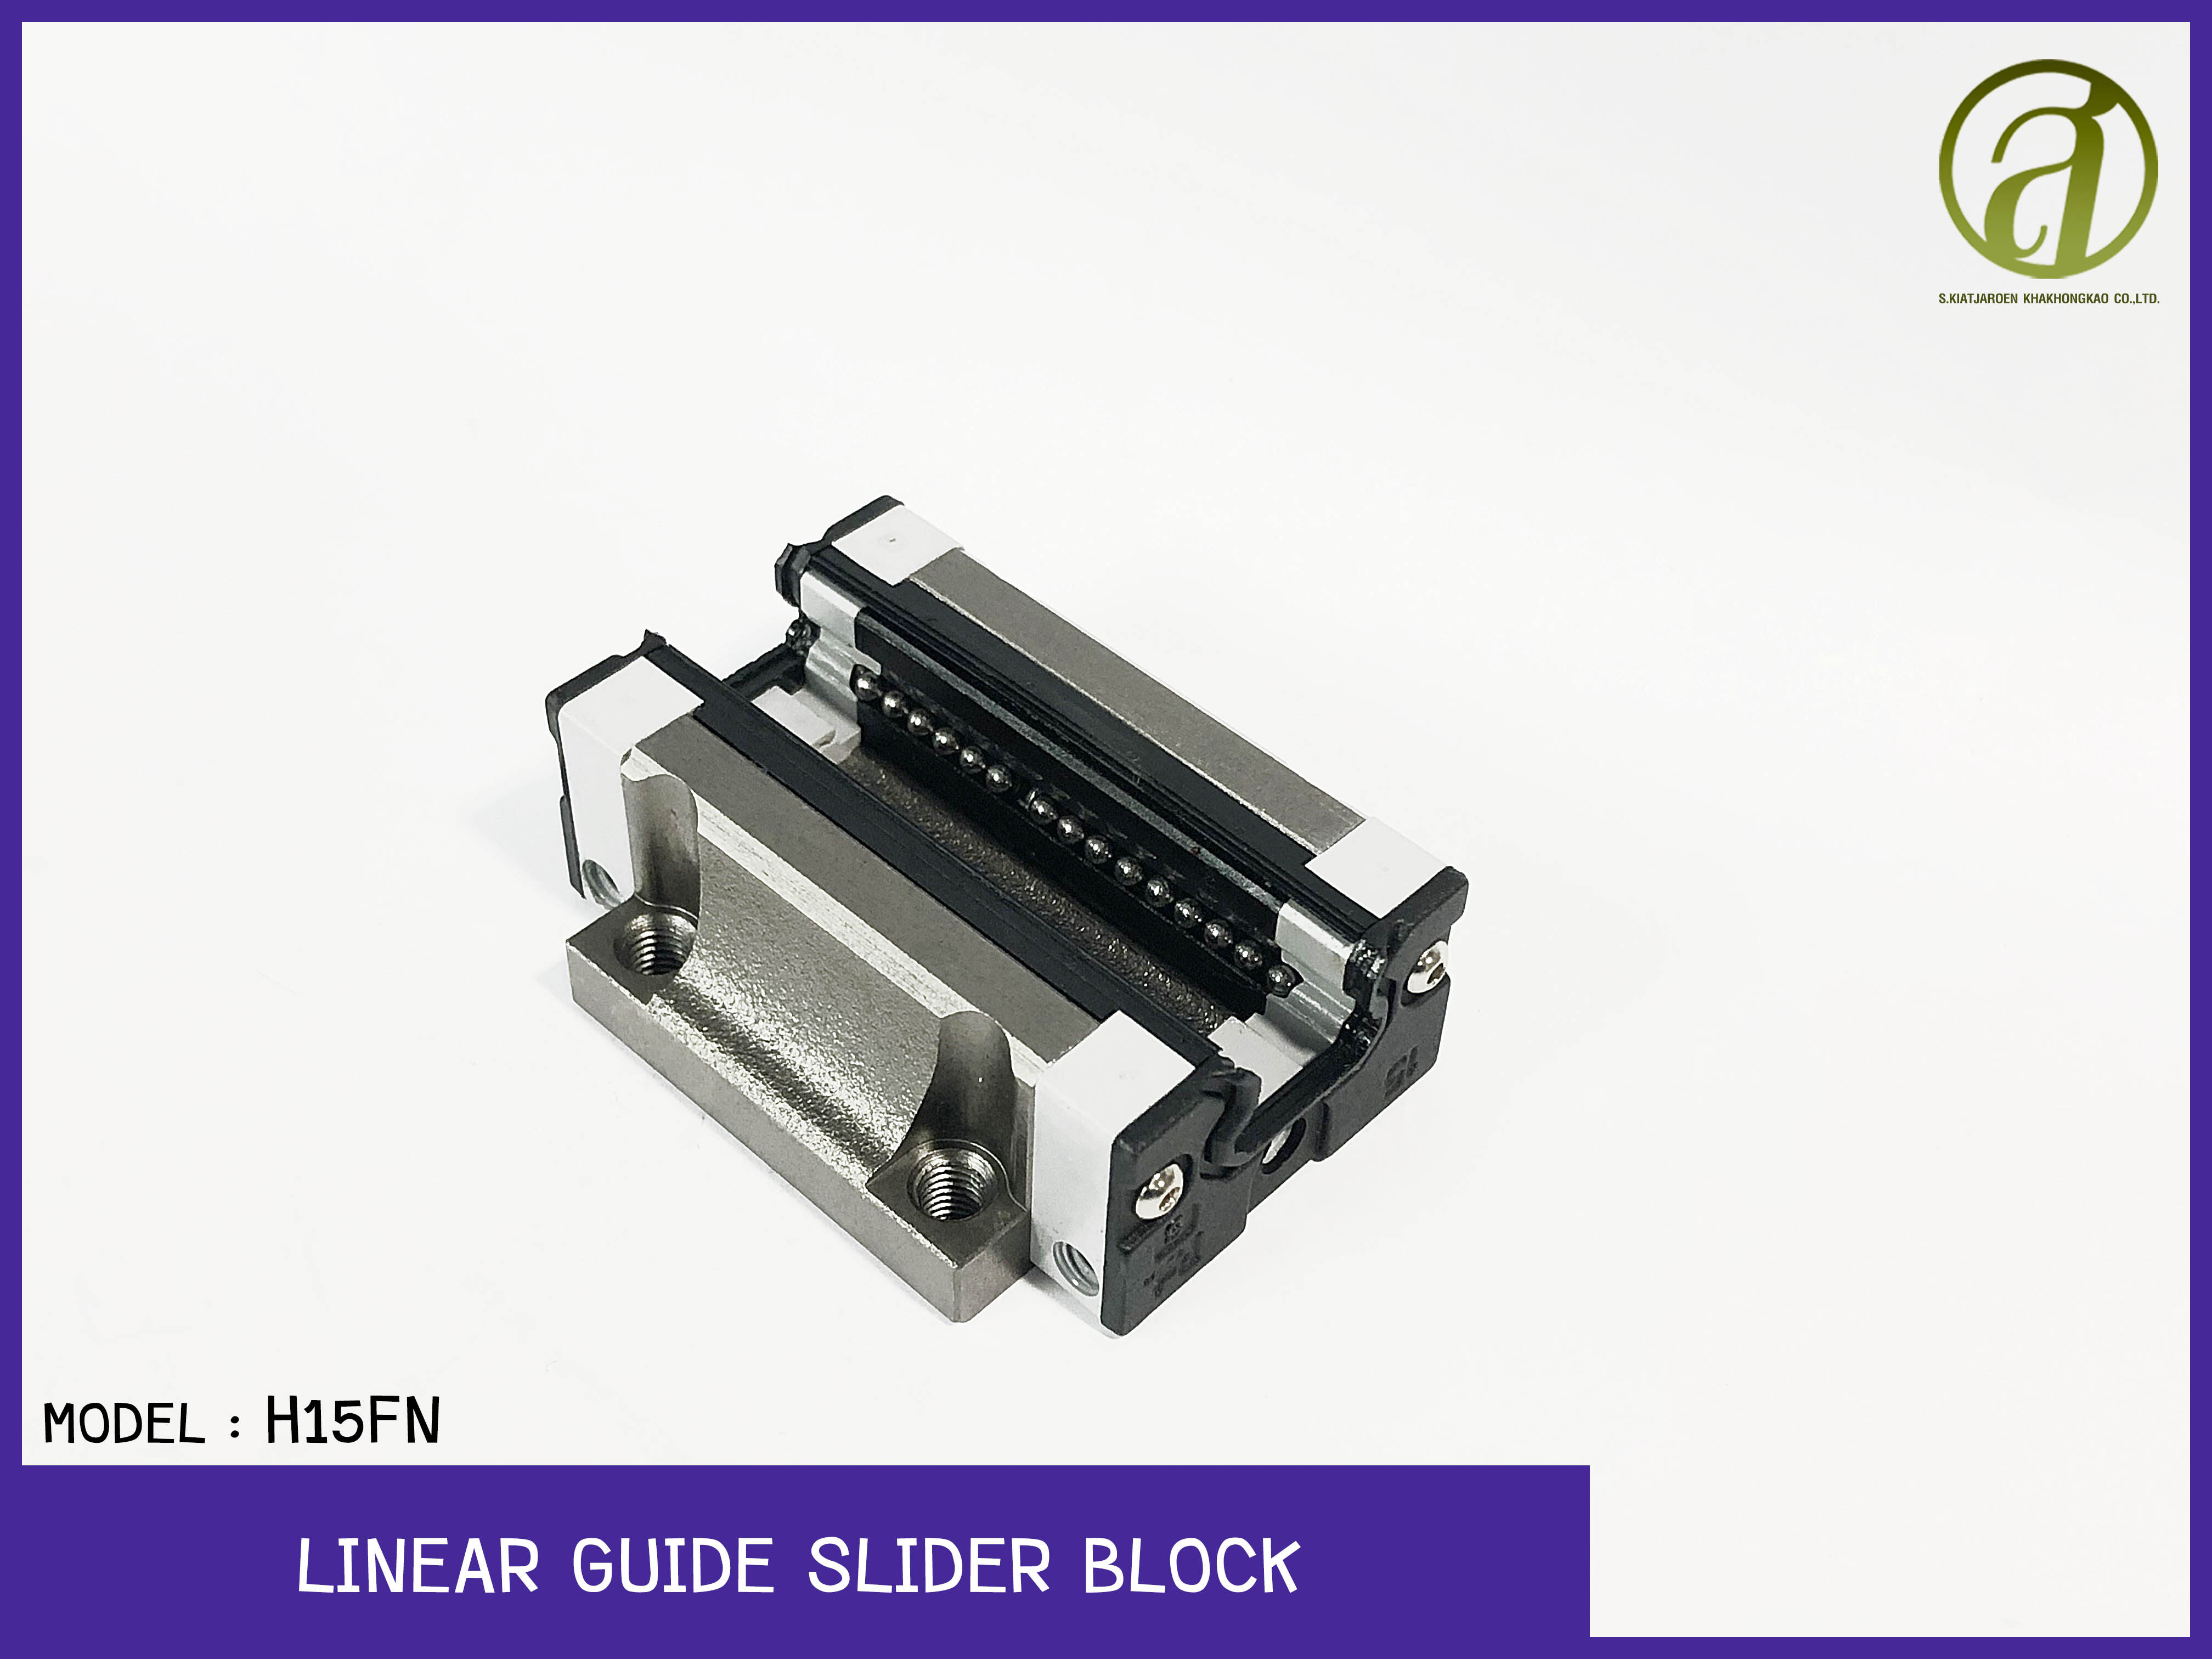 รางสไลด์ บล็อครางสไลด์ บล็อครางเลื่อน Linear Guide Slider Block รุ่น H15FN